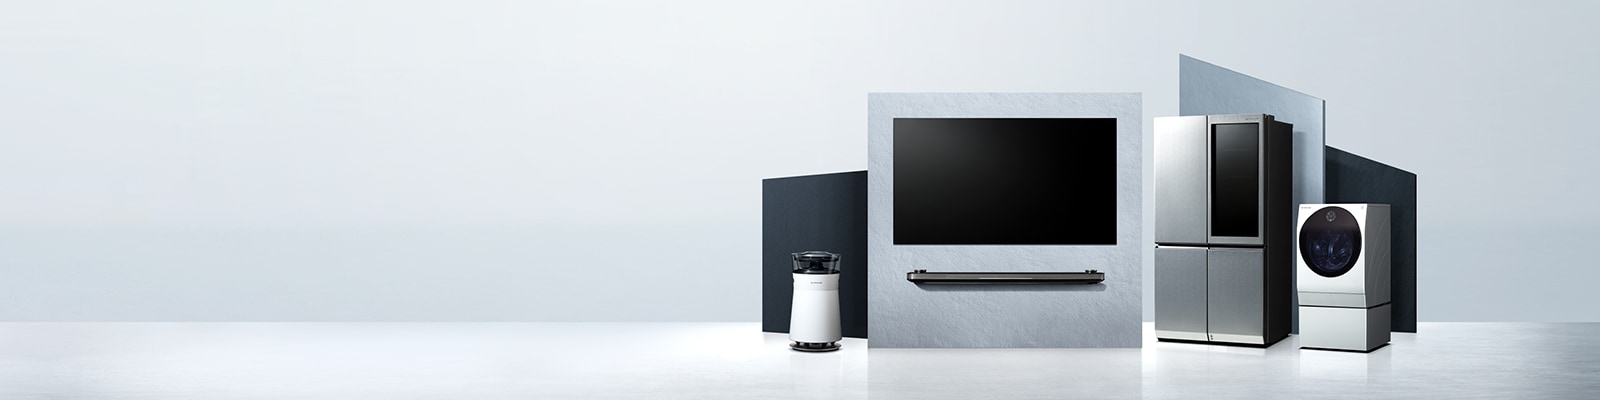 LG SIGNATURE OLED TV W，冰箱和洗衣机放置在虚拟空间上。